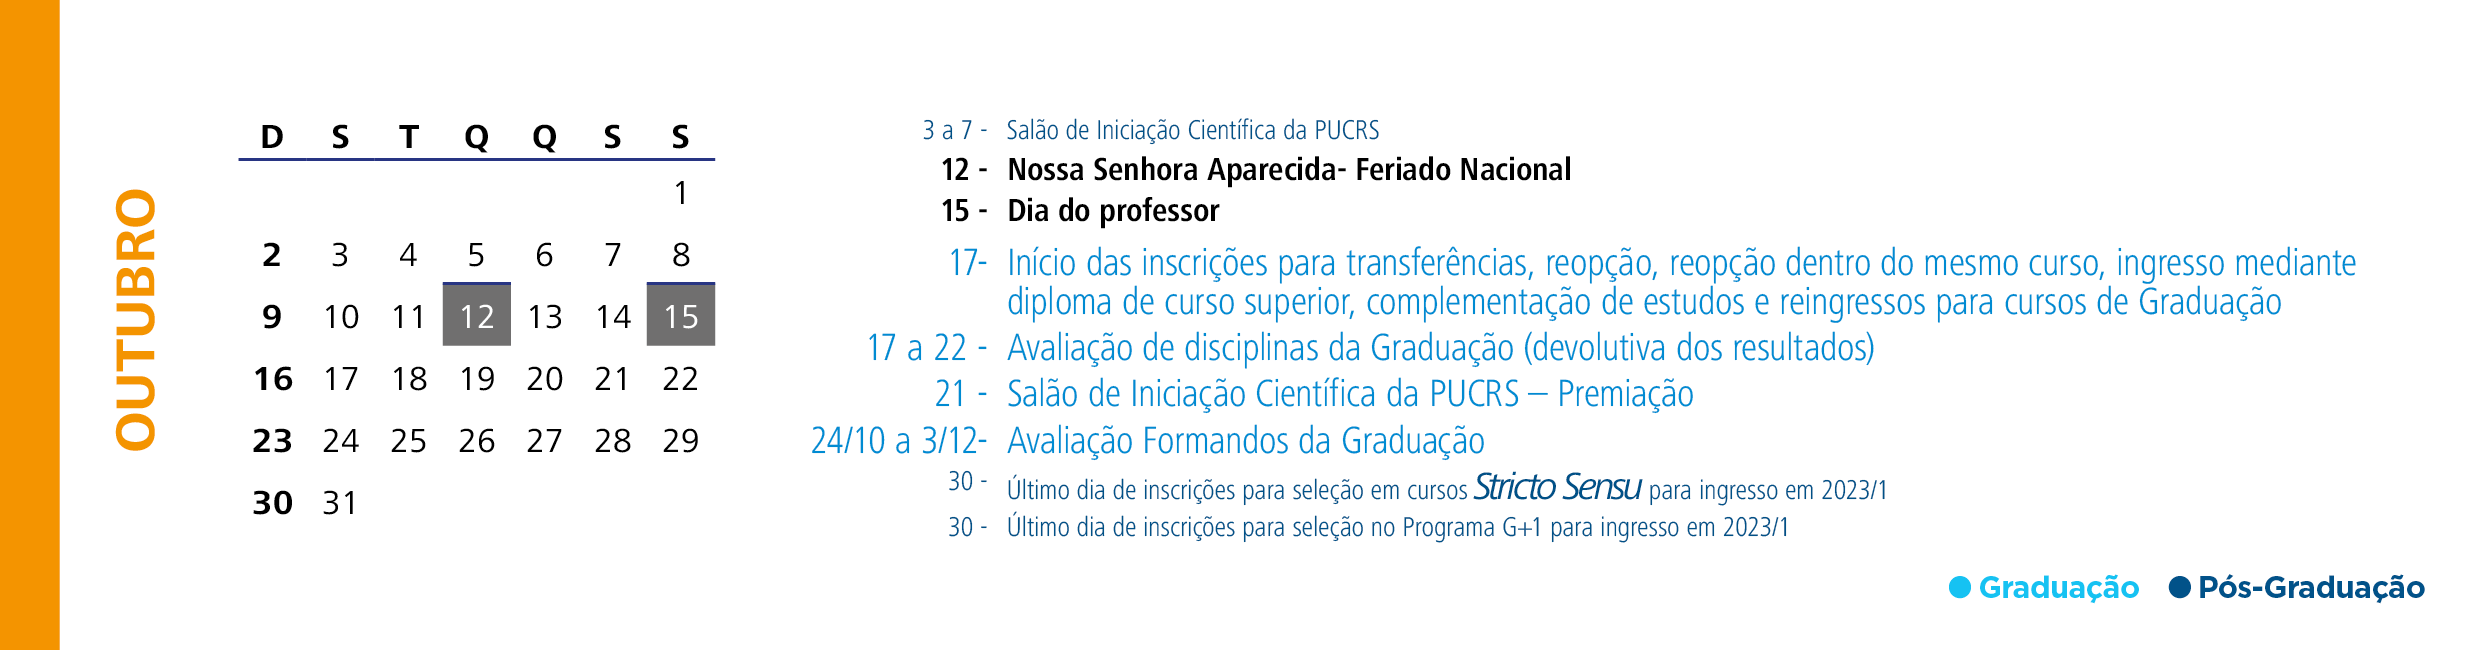 Calendário Acadêmico PUCRS - Mês de Outubro